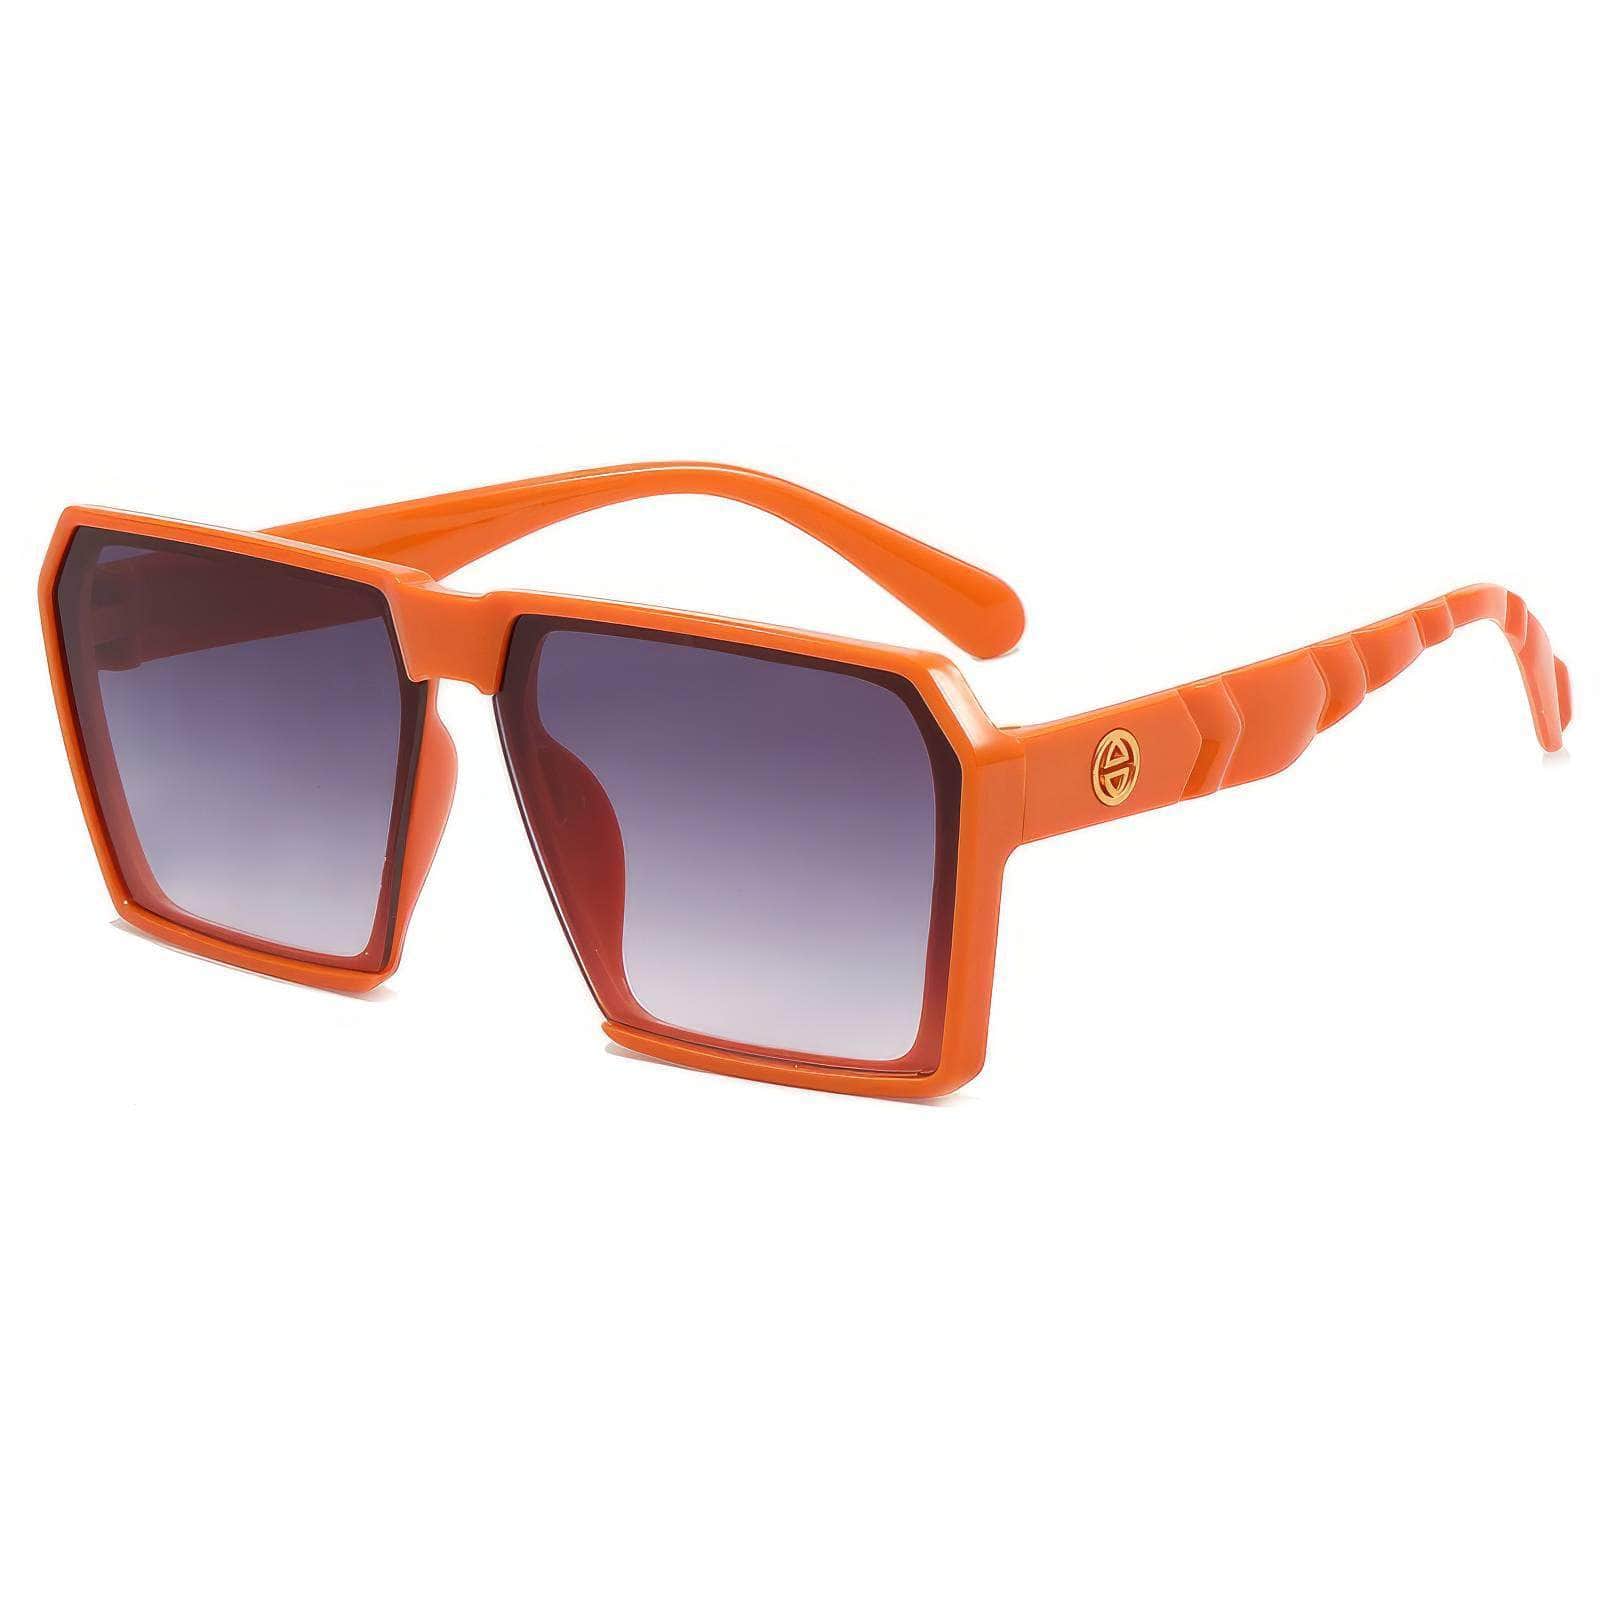 Bold & Stylish Oversized Square Shades Eyewear Orange/Gray / Resin